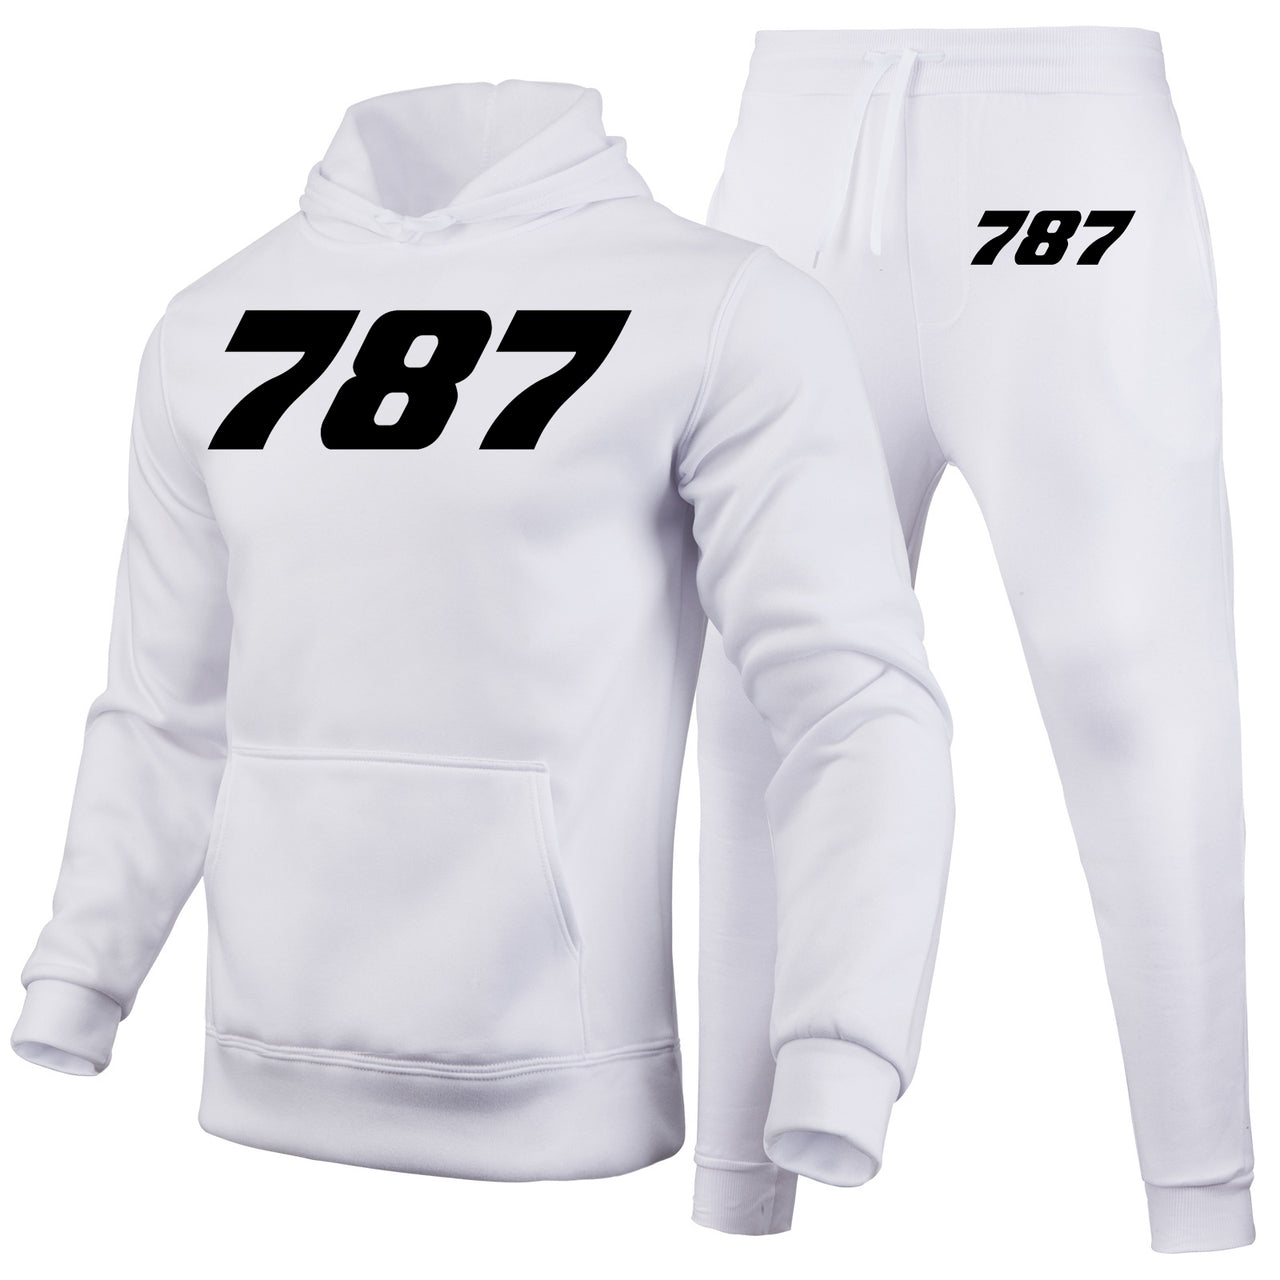 787 Flat Text Designed Hoodies & Sweatpants Set